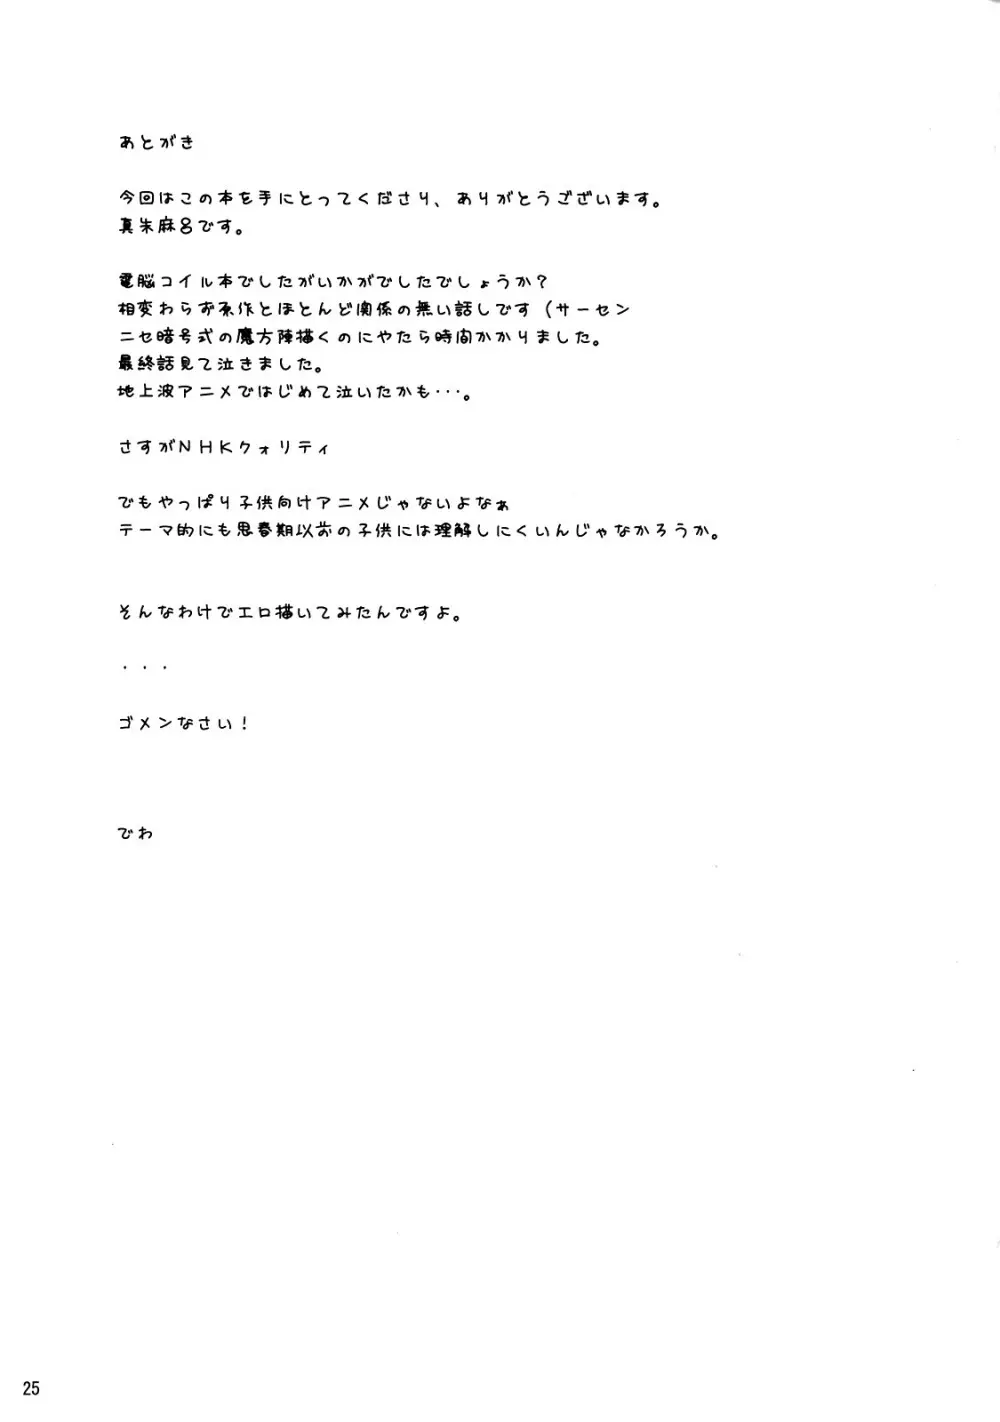 警告 天沢勇子との接続に失敗しました。 24ページ